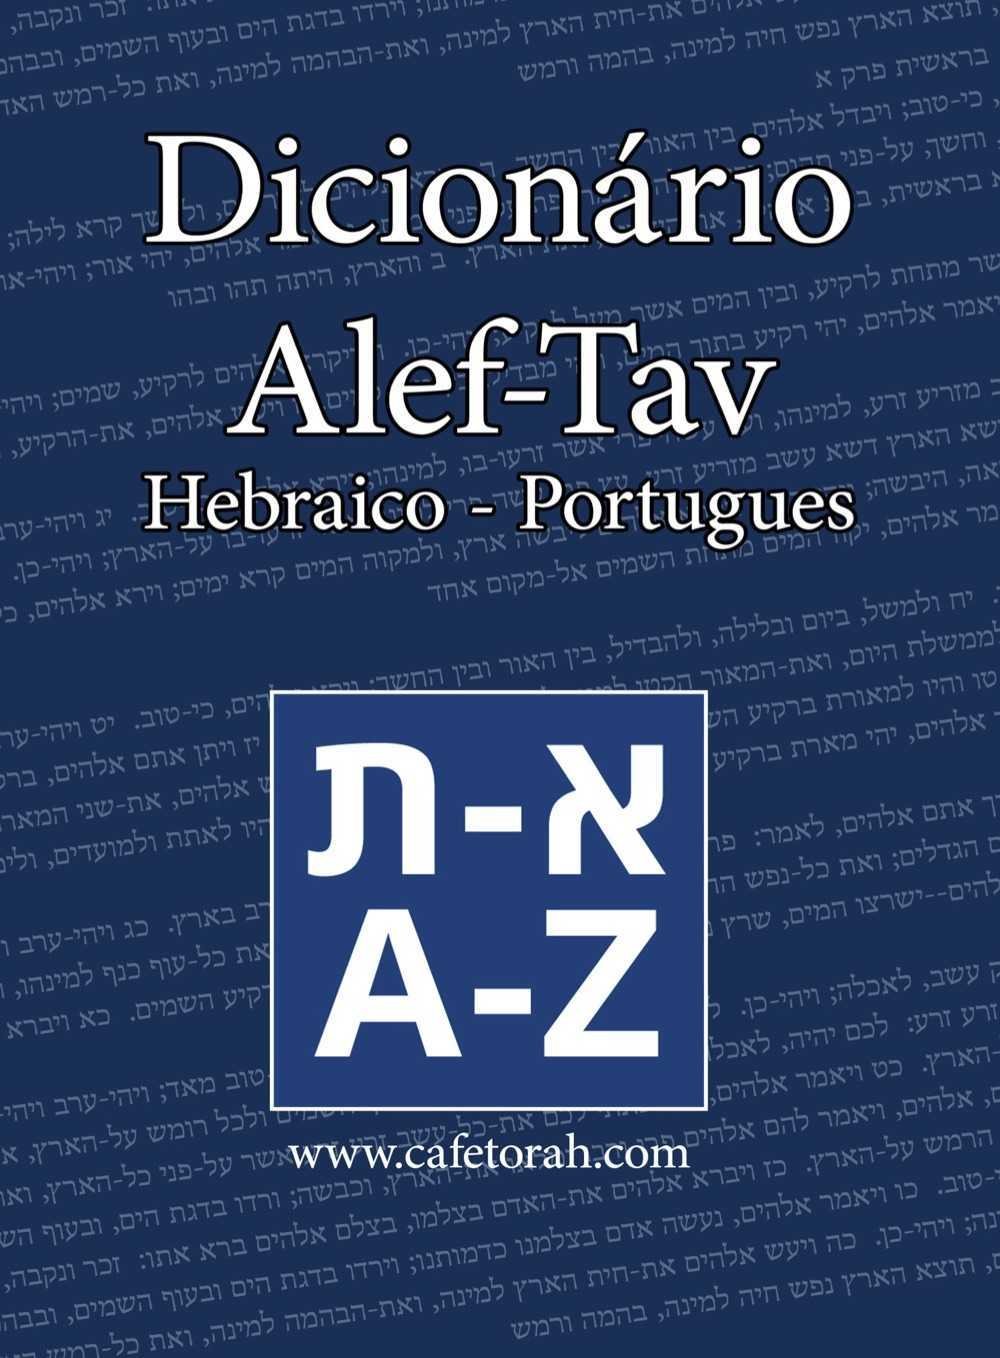 Grátis - Dicionário Hebraico Português em eBook - Notícias de Israel -  Cafetorah